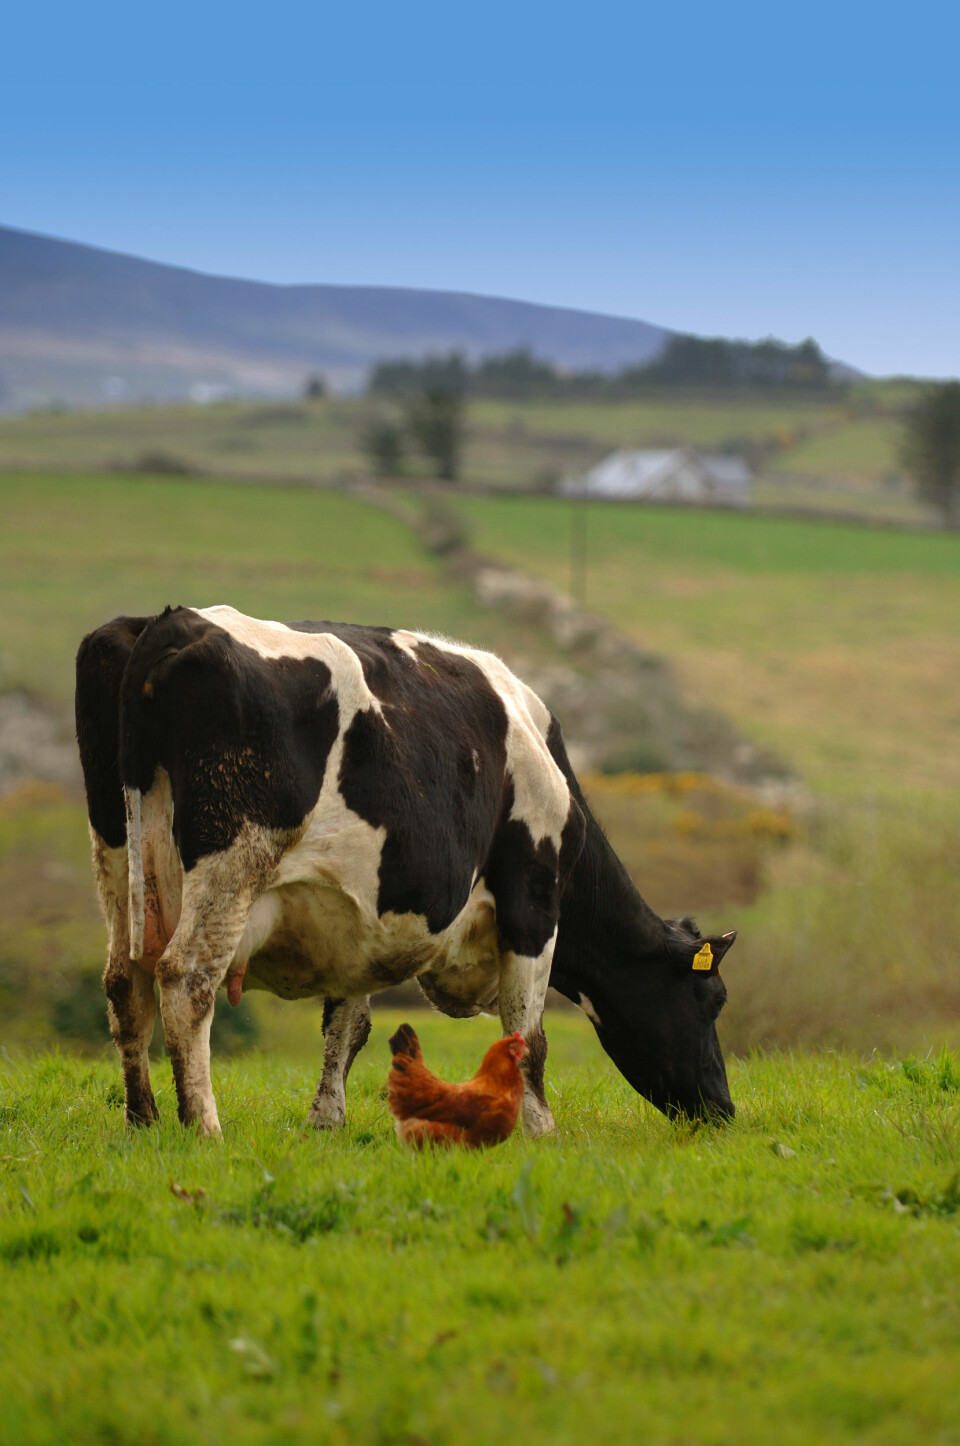 Landbruksnæringens praksis med å gi antibiotika til sunne husdyr har bidratt til antibiotikaresistensen. (Illustrasjonsfoto: www.colourbox.no)